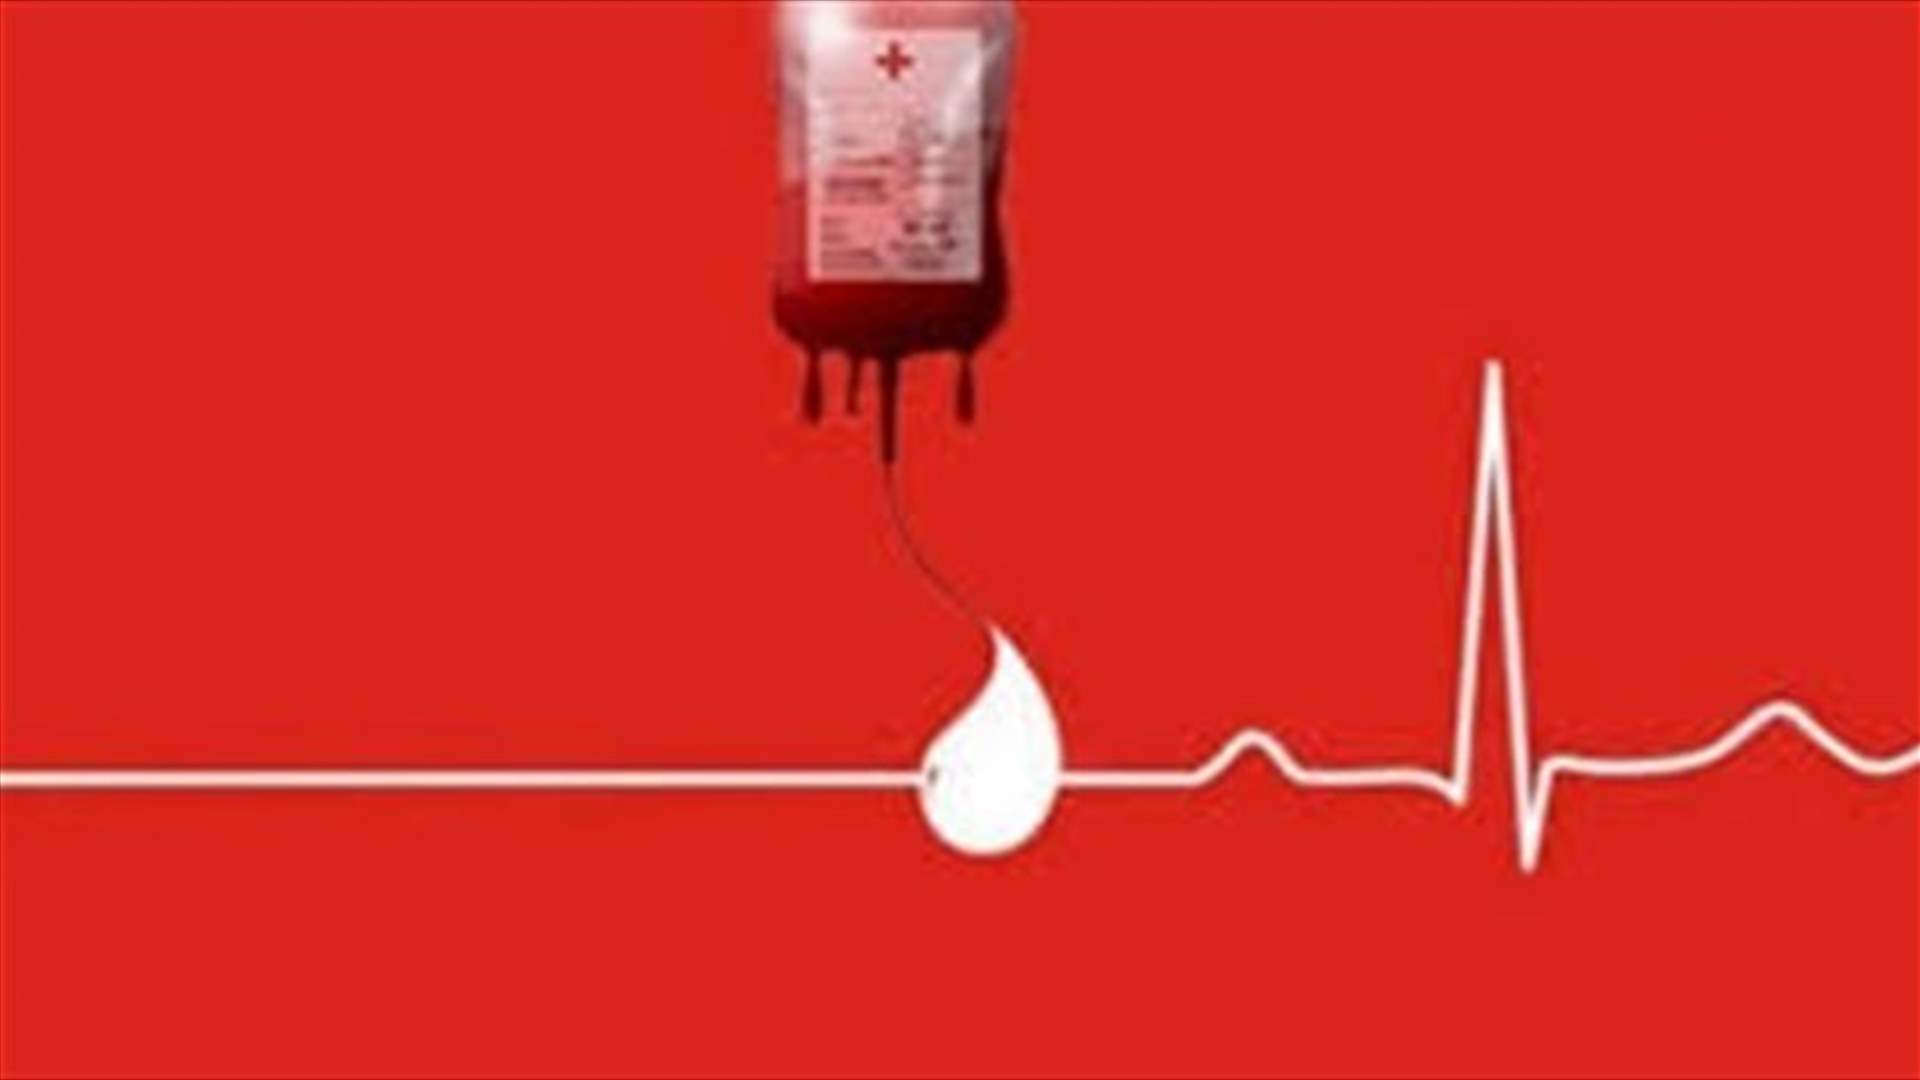 مريضة في مستشفى الجعيتاوي - الأشرفية بحاجة إلى 4 وحدات دم من فئة O+. للتبرع، الرجاء الإتصال على:  70189607 أو 70758057